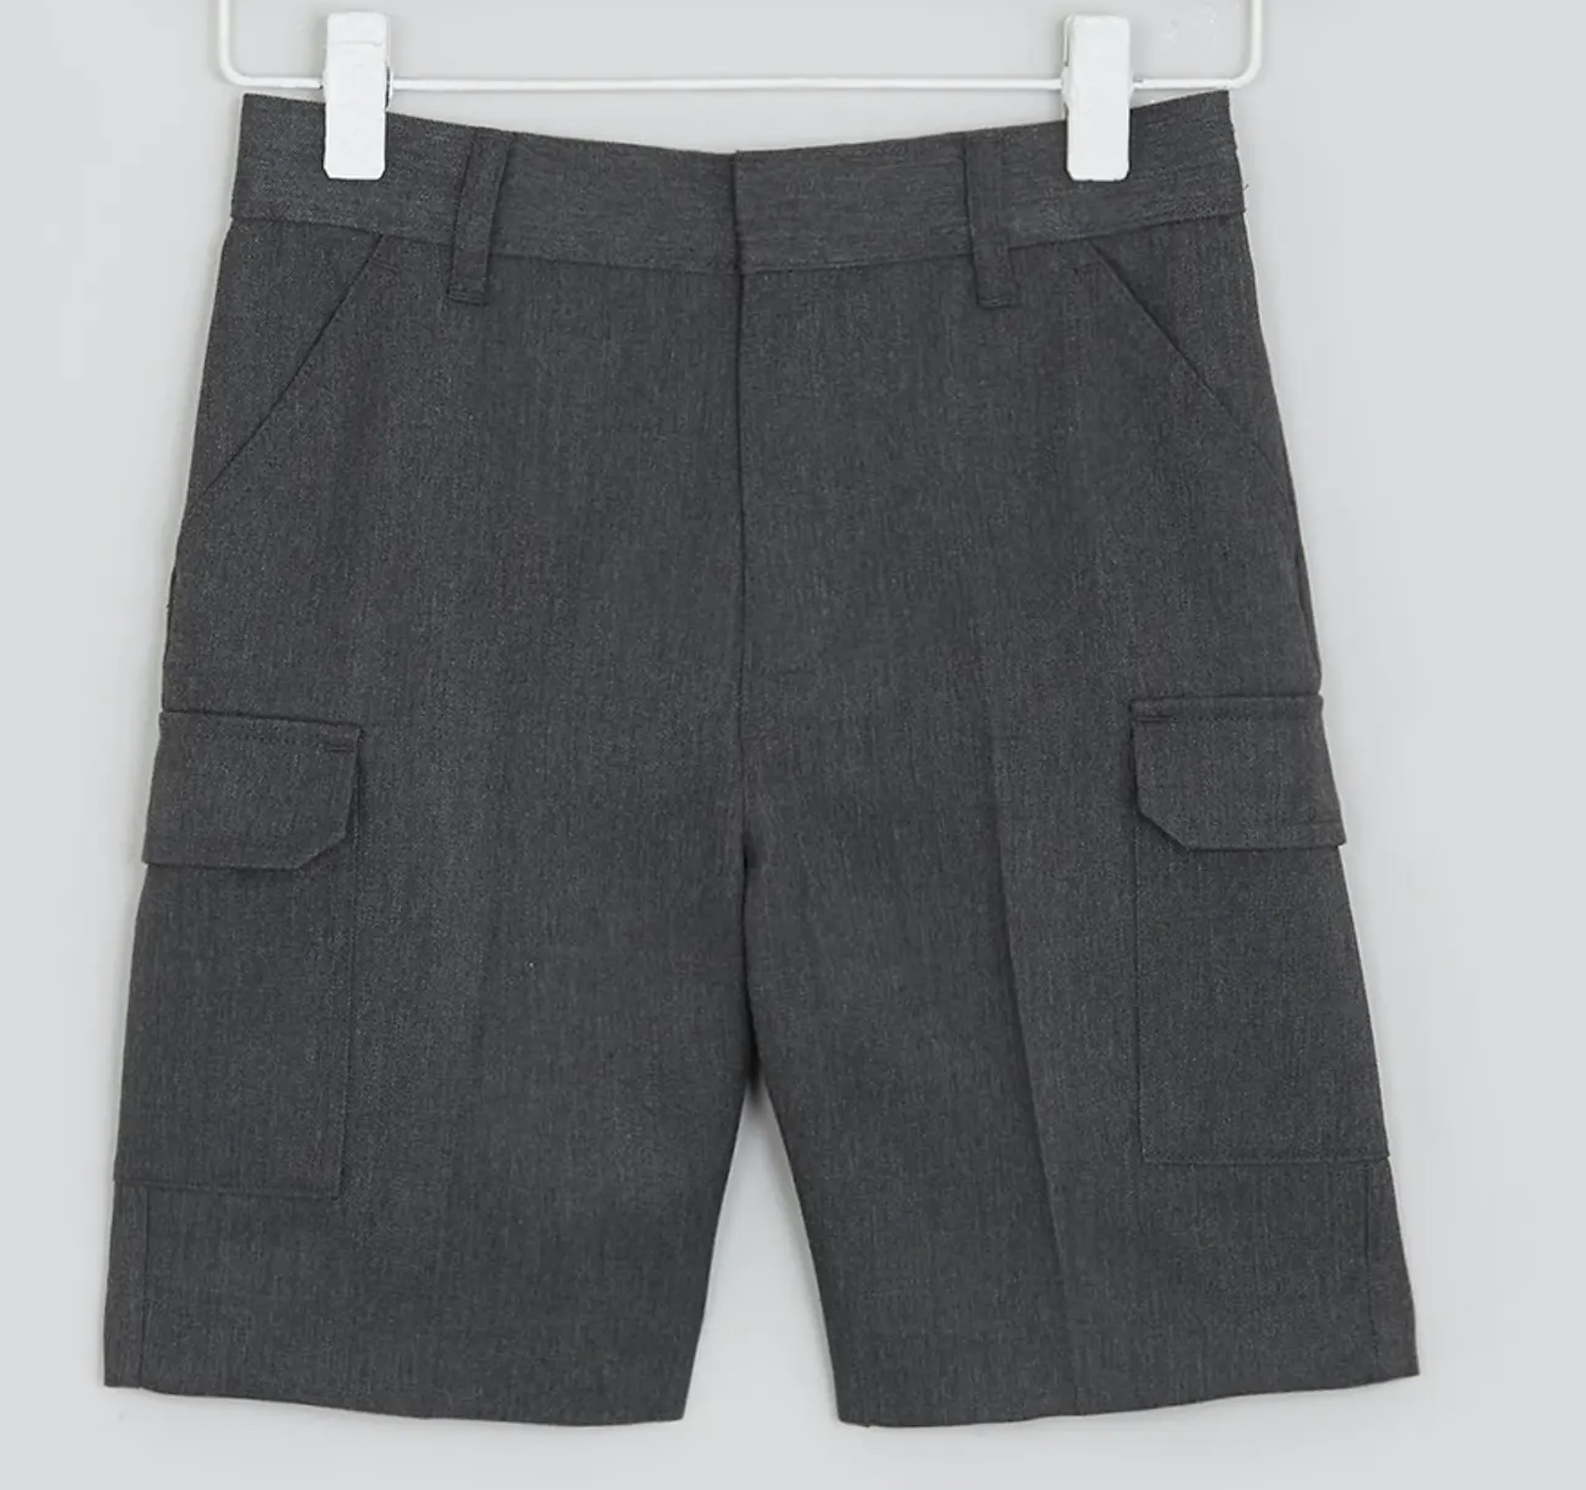 Boys' Dark Grey Cargo Shorts, Flat Front, Adjustable Waist, Four Pockets 7-8 Y